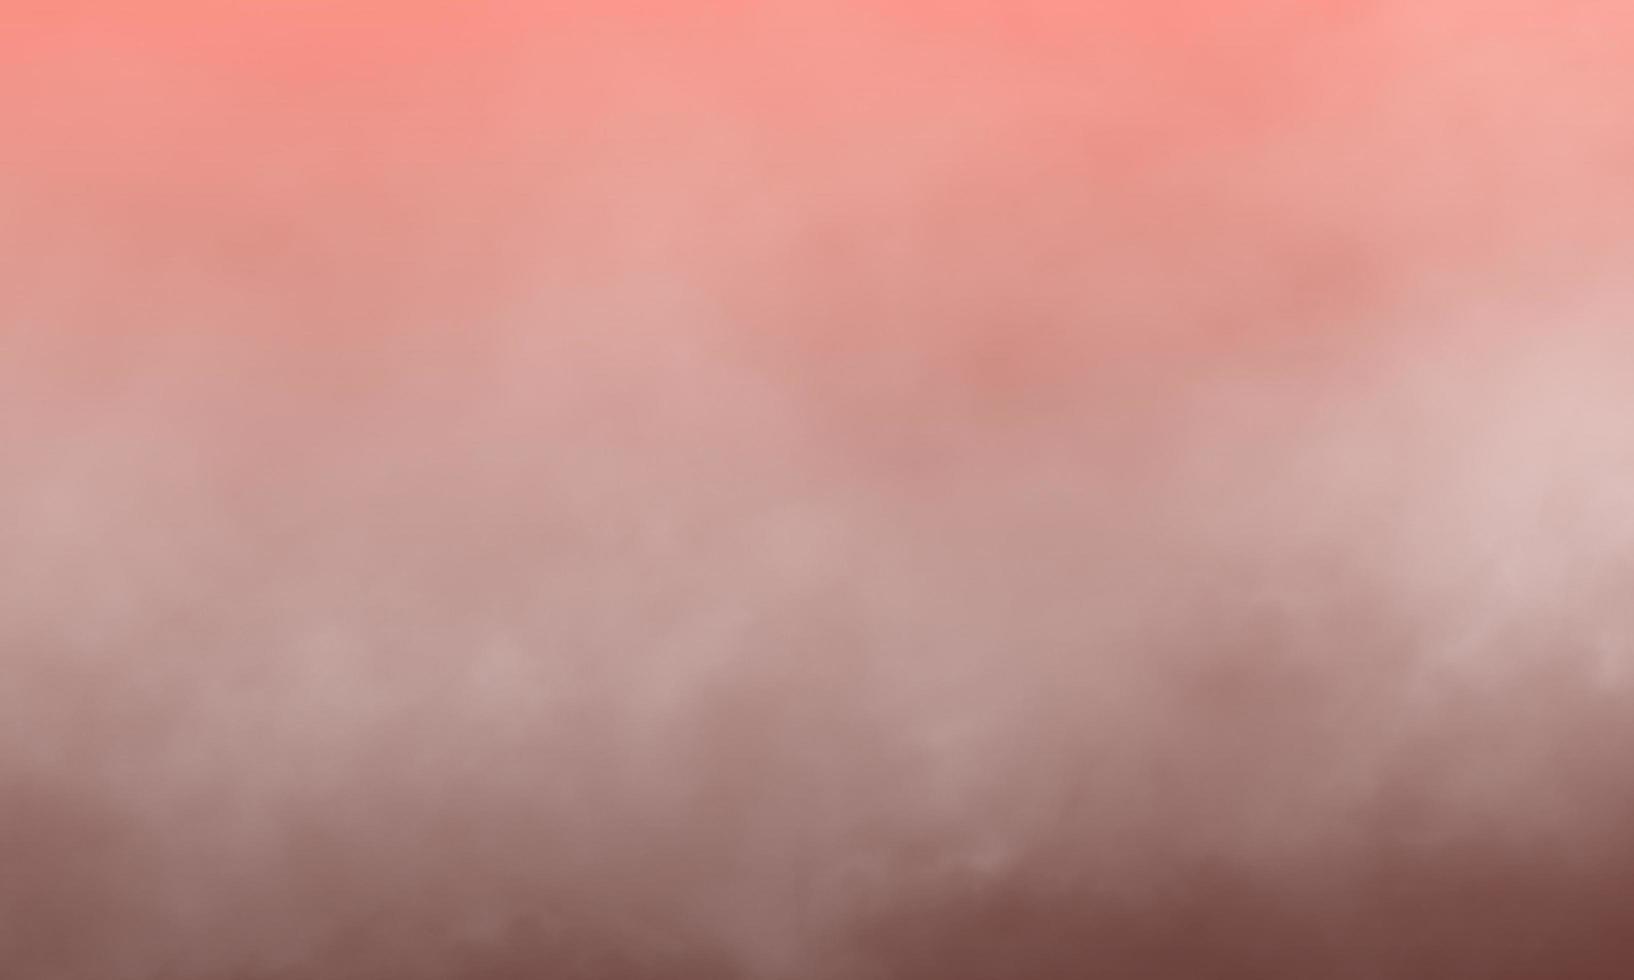 sfondo rosa corallo nebbia o fumo isolato per effetto. foto